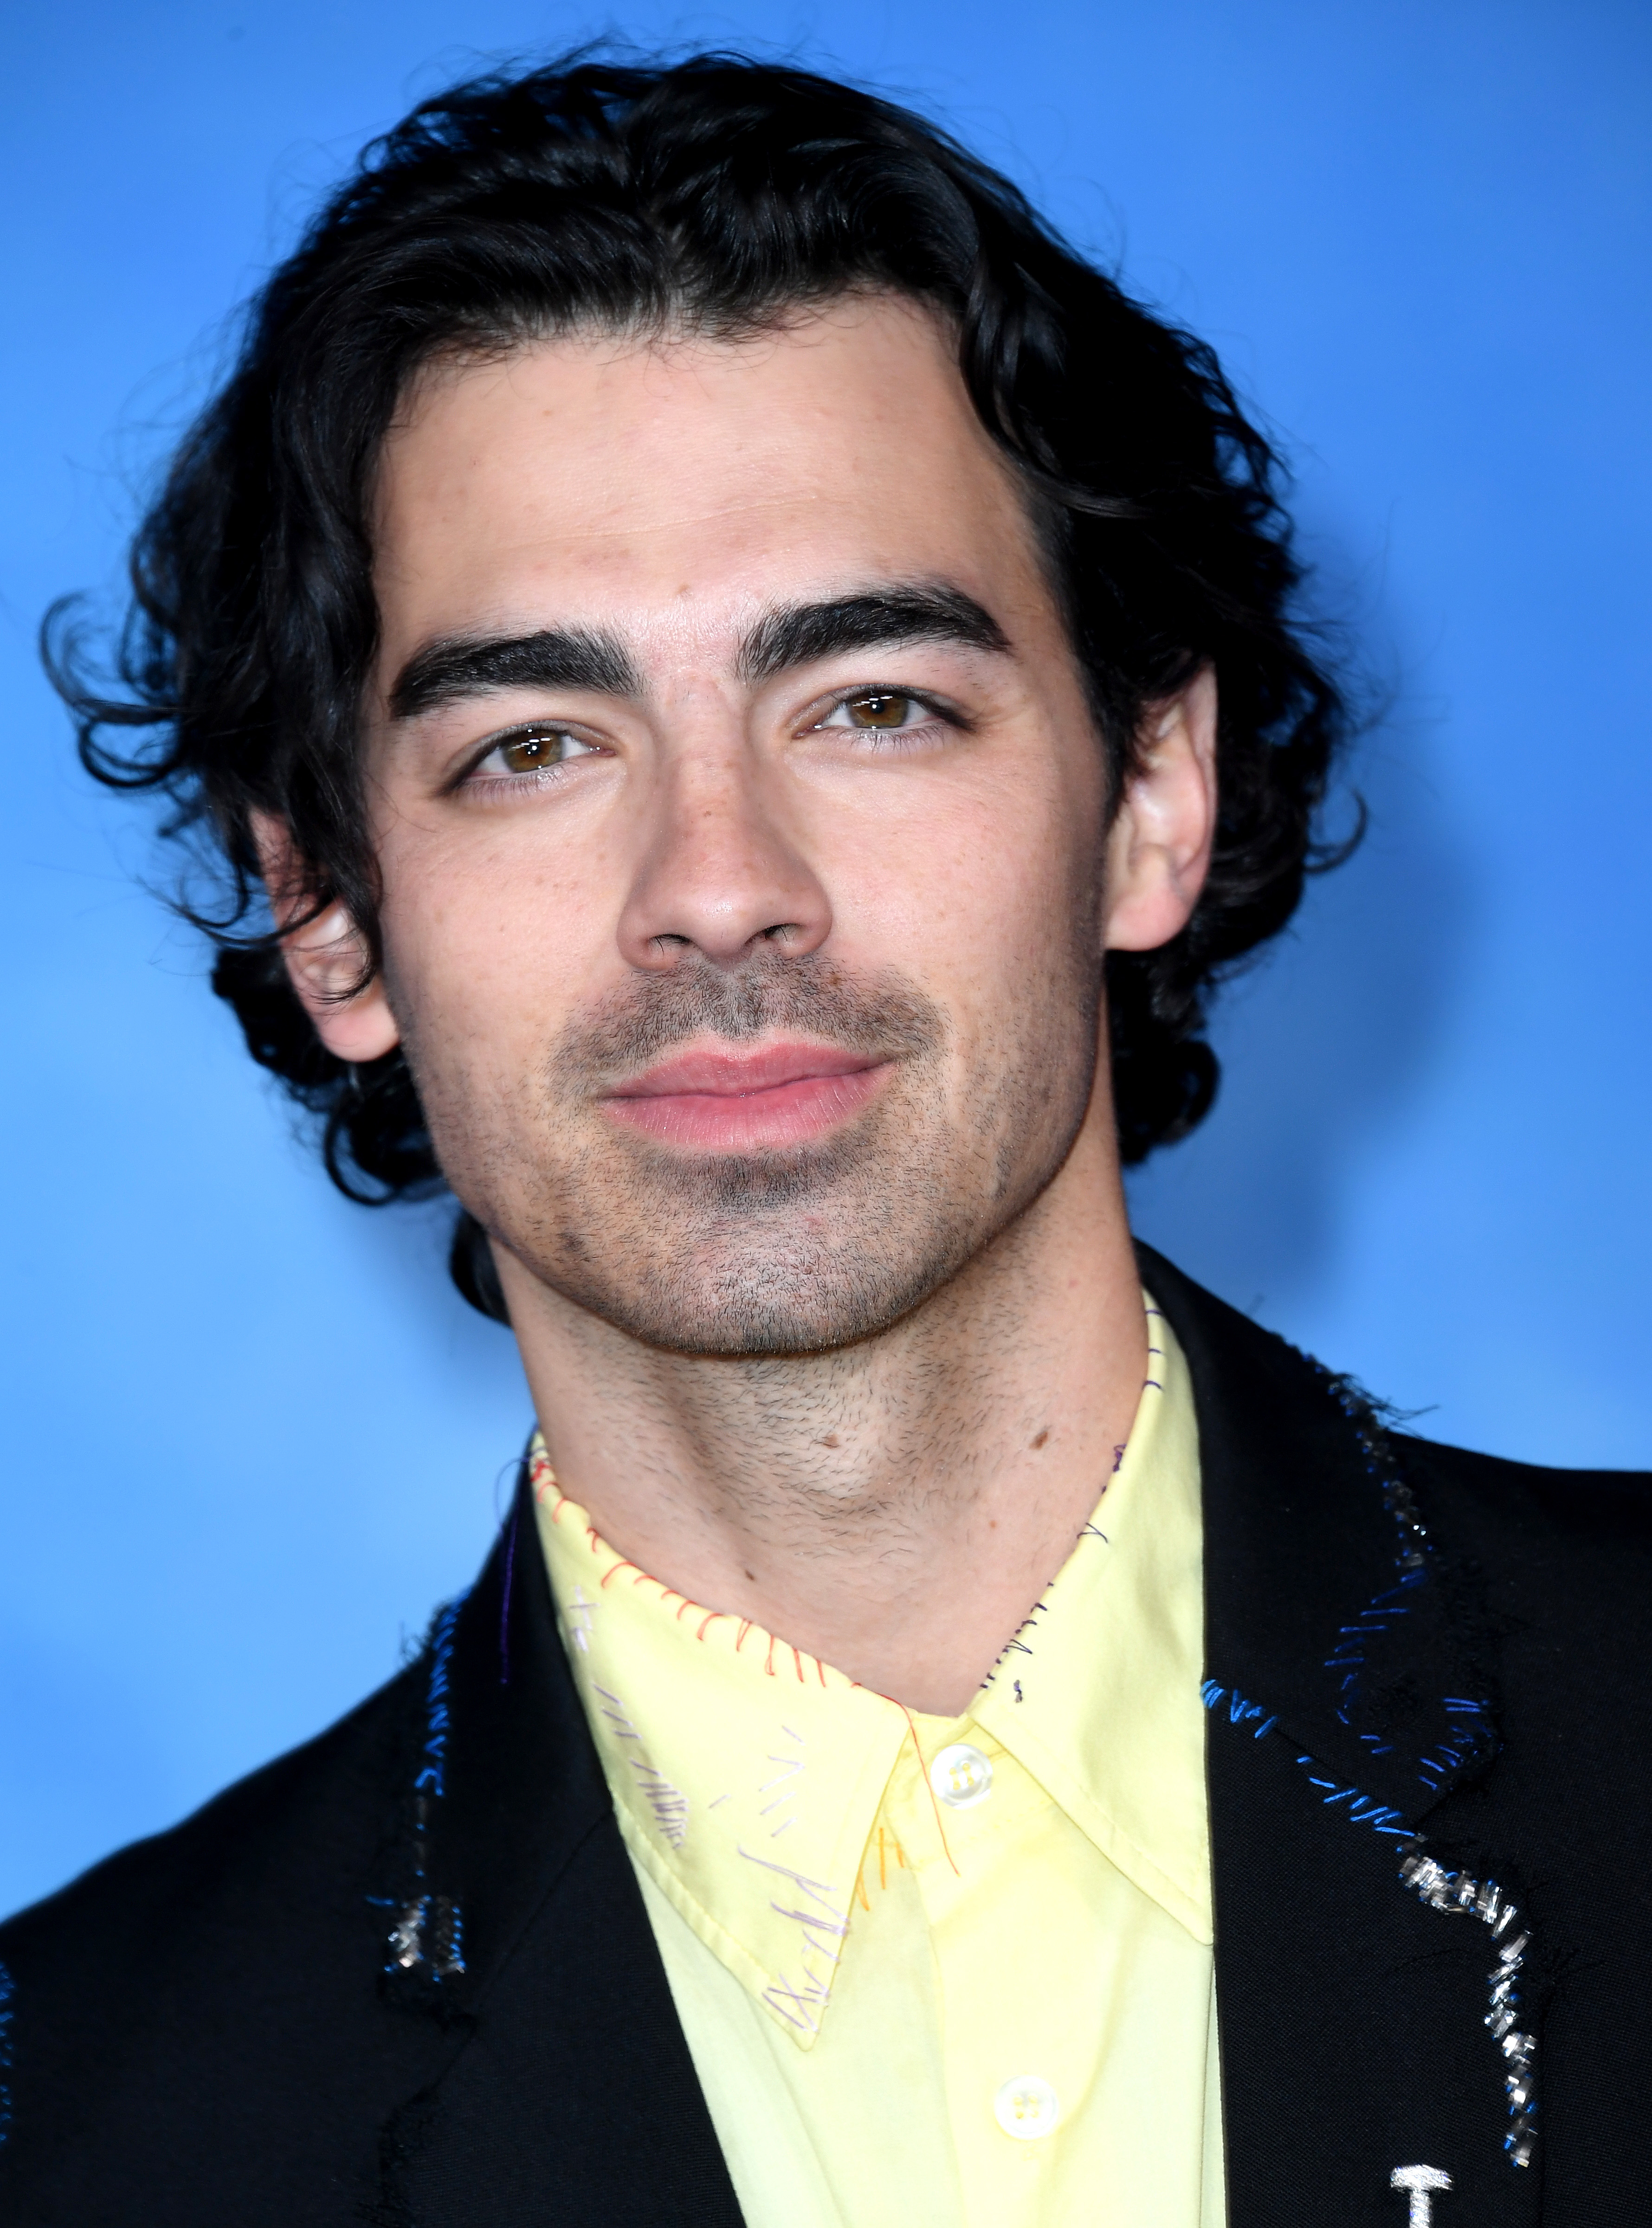 A closeup of Joe Jonas